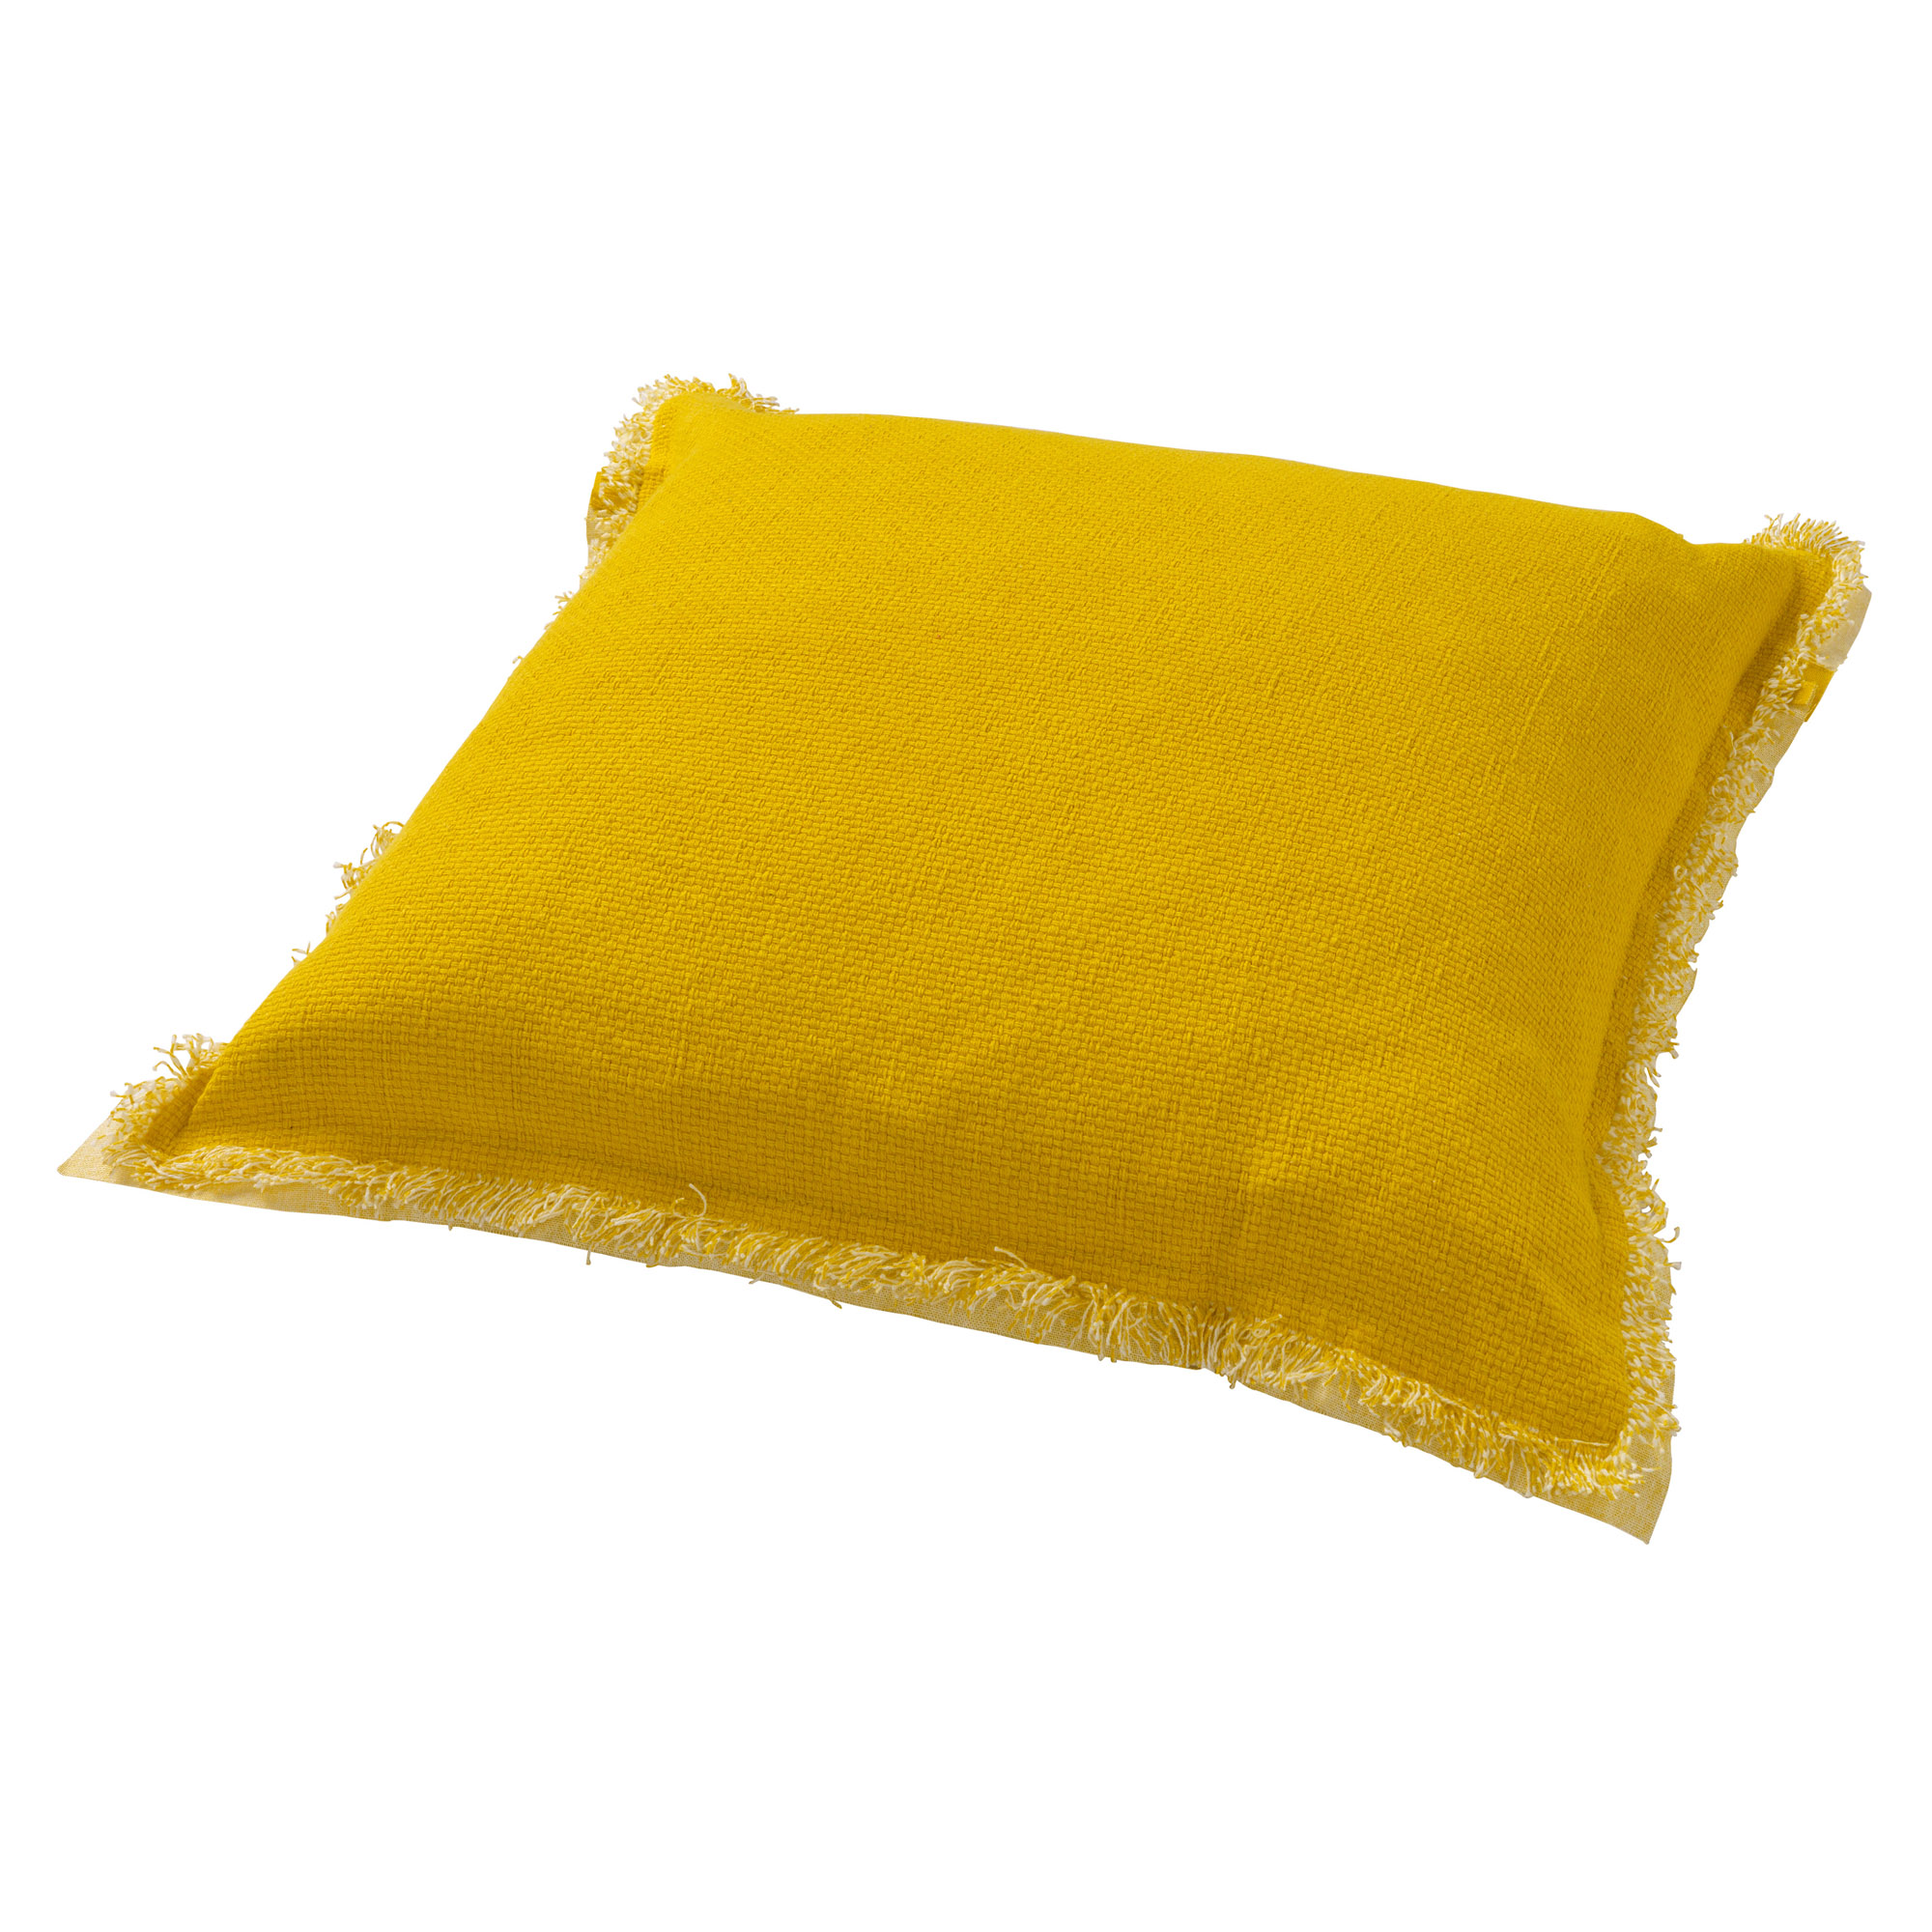 BURTO - Kussenhoes van gewassen katoen Lemon 45x45 cm - geel